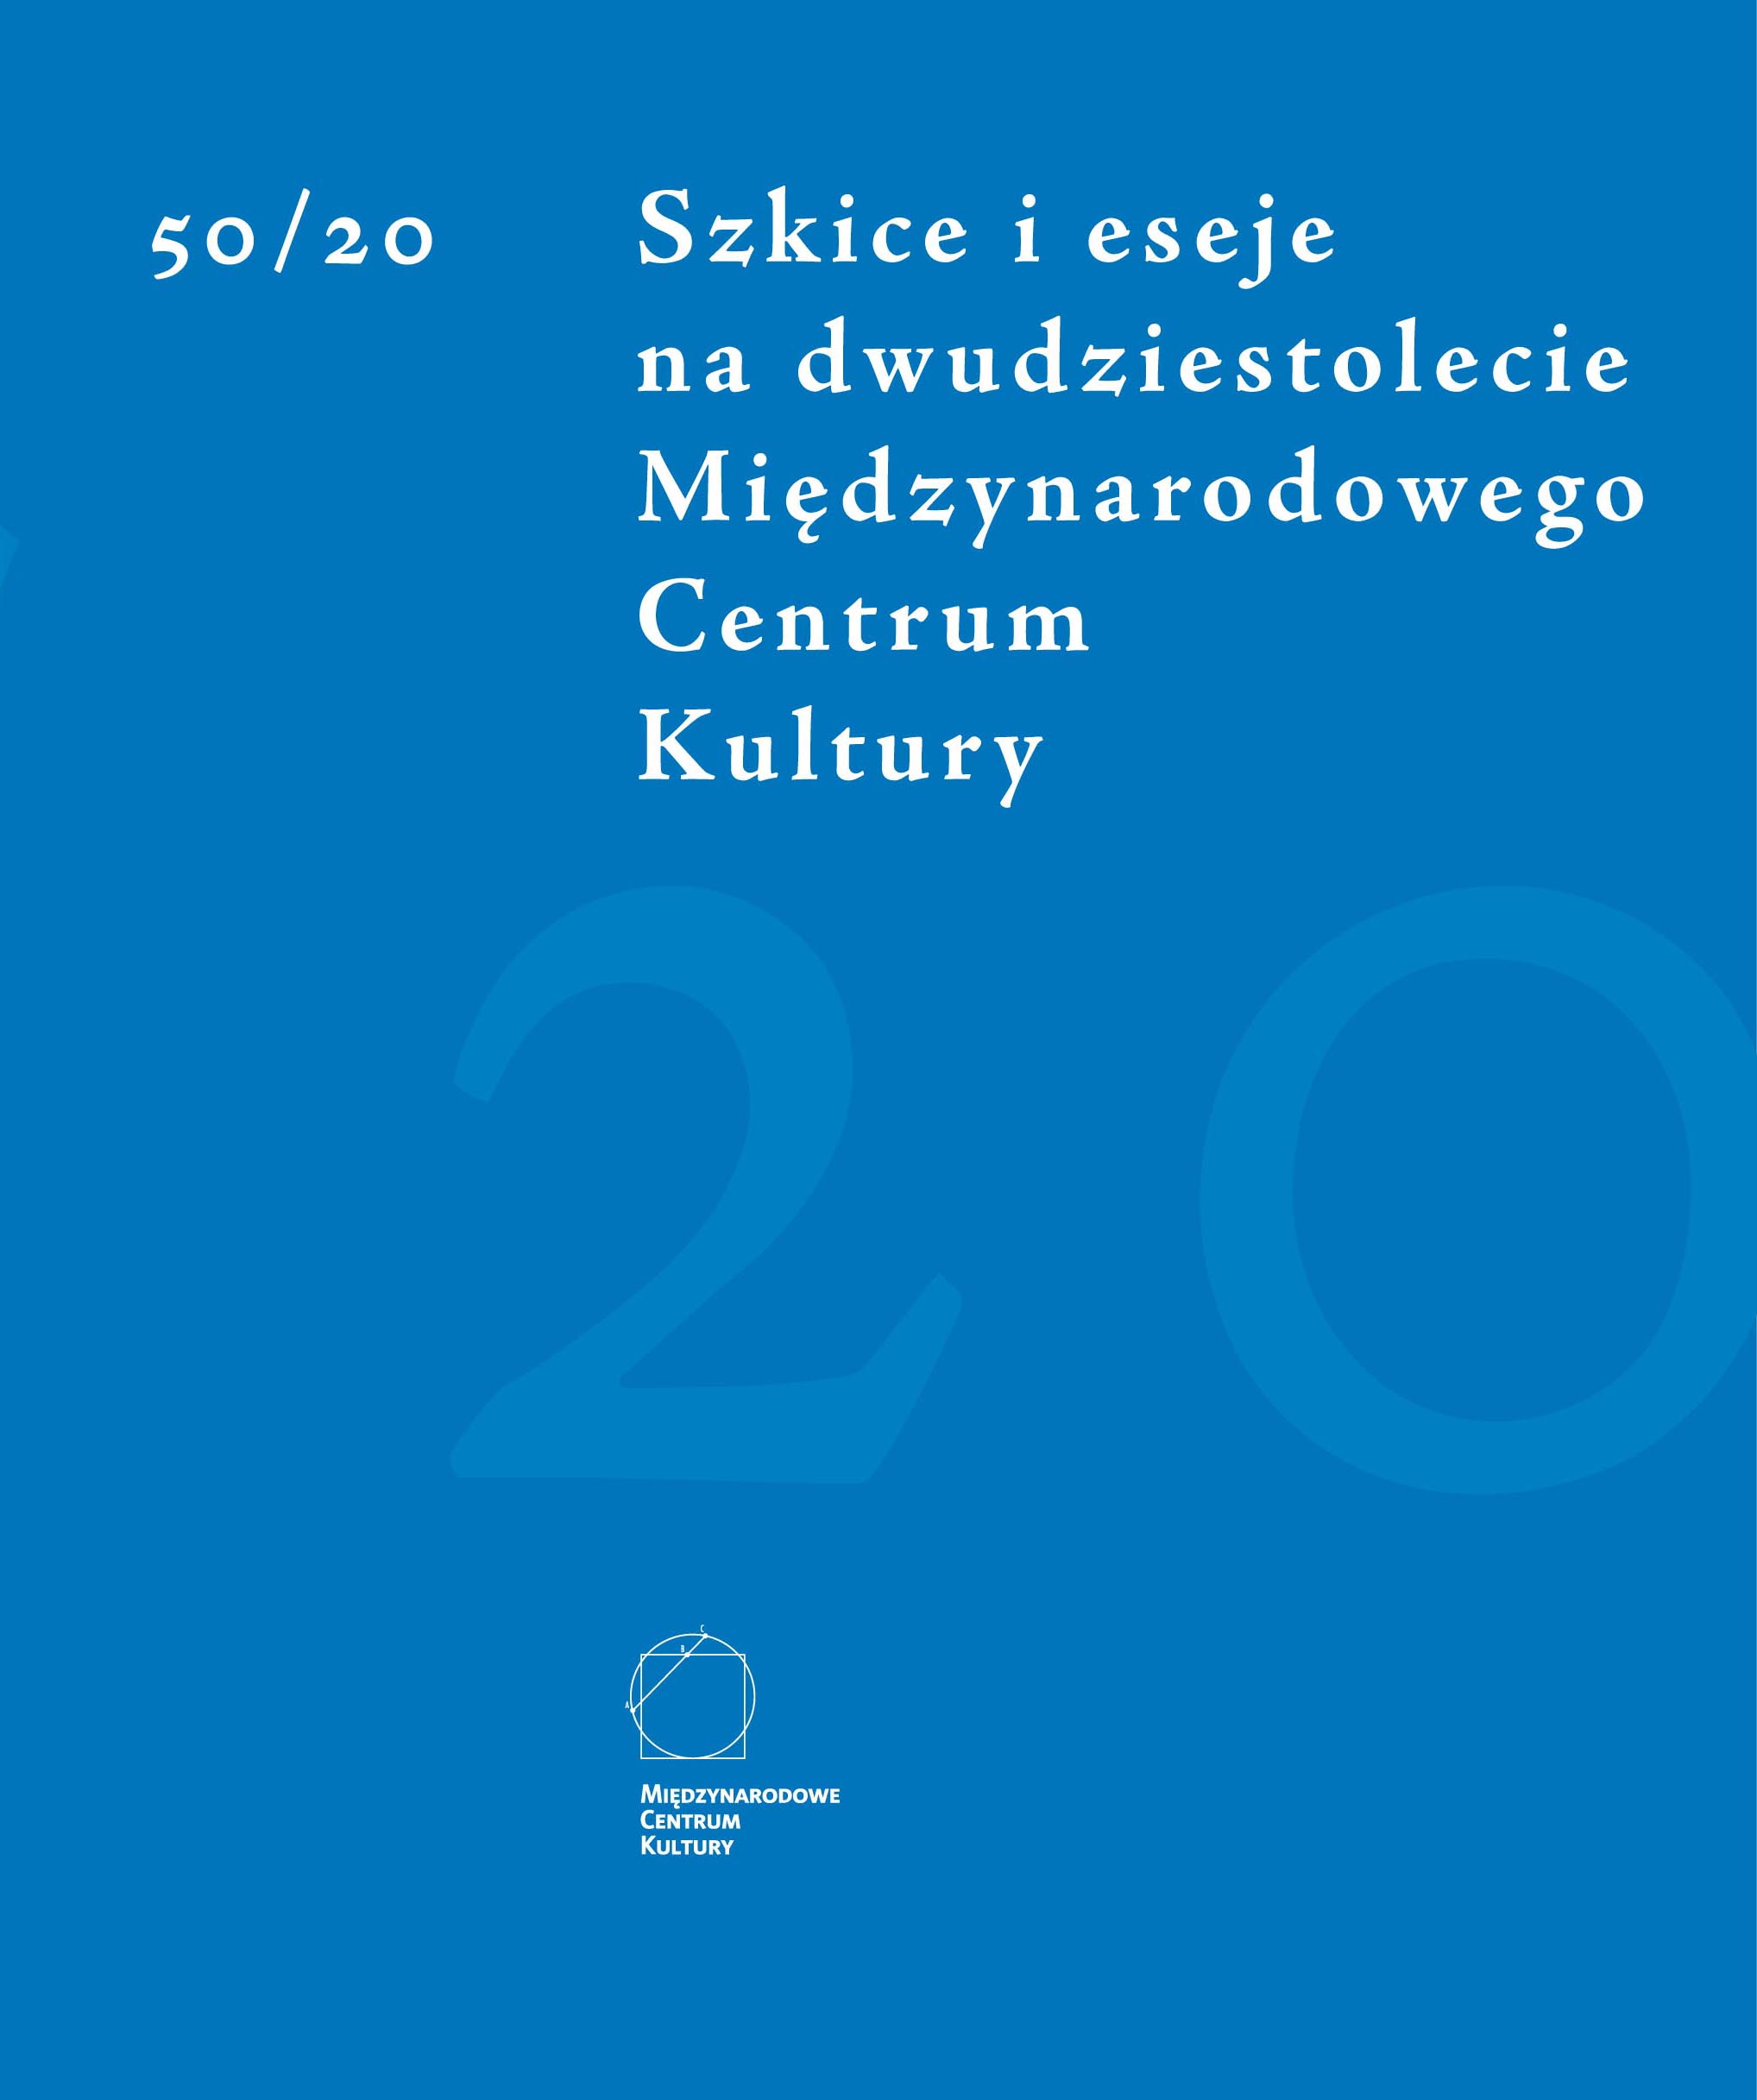 "50/20 szkice i eseje na dwudziestolecie Międzynarodowego Centrum Kultury"